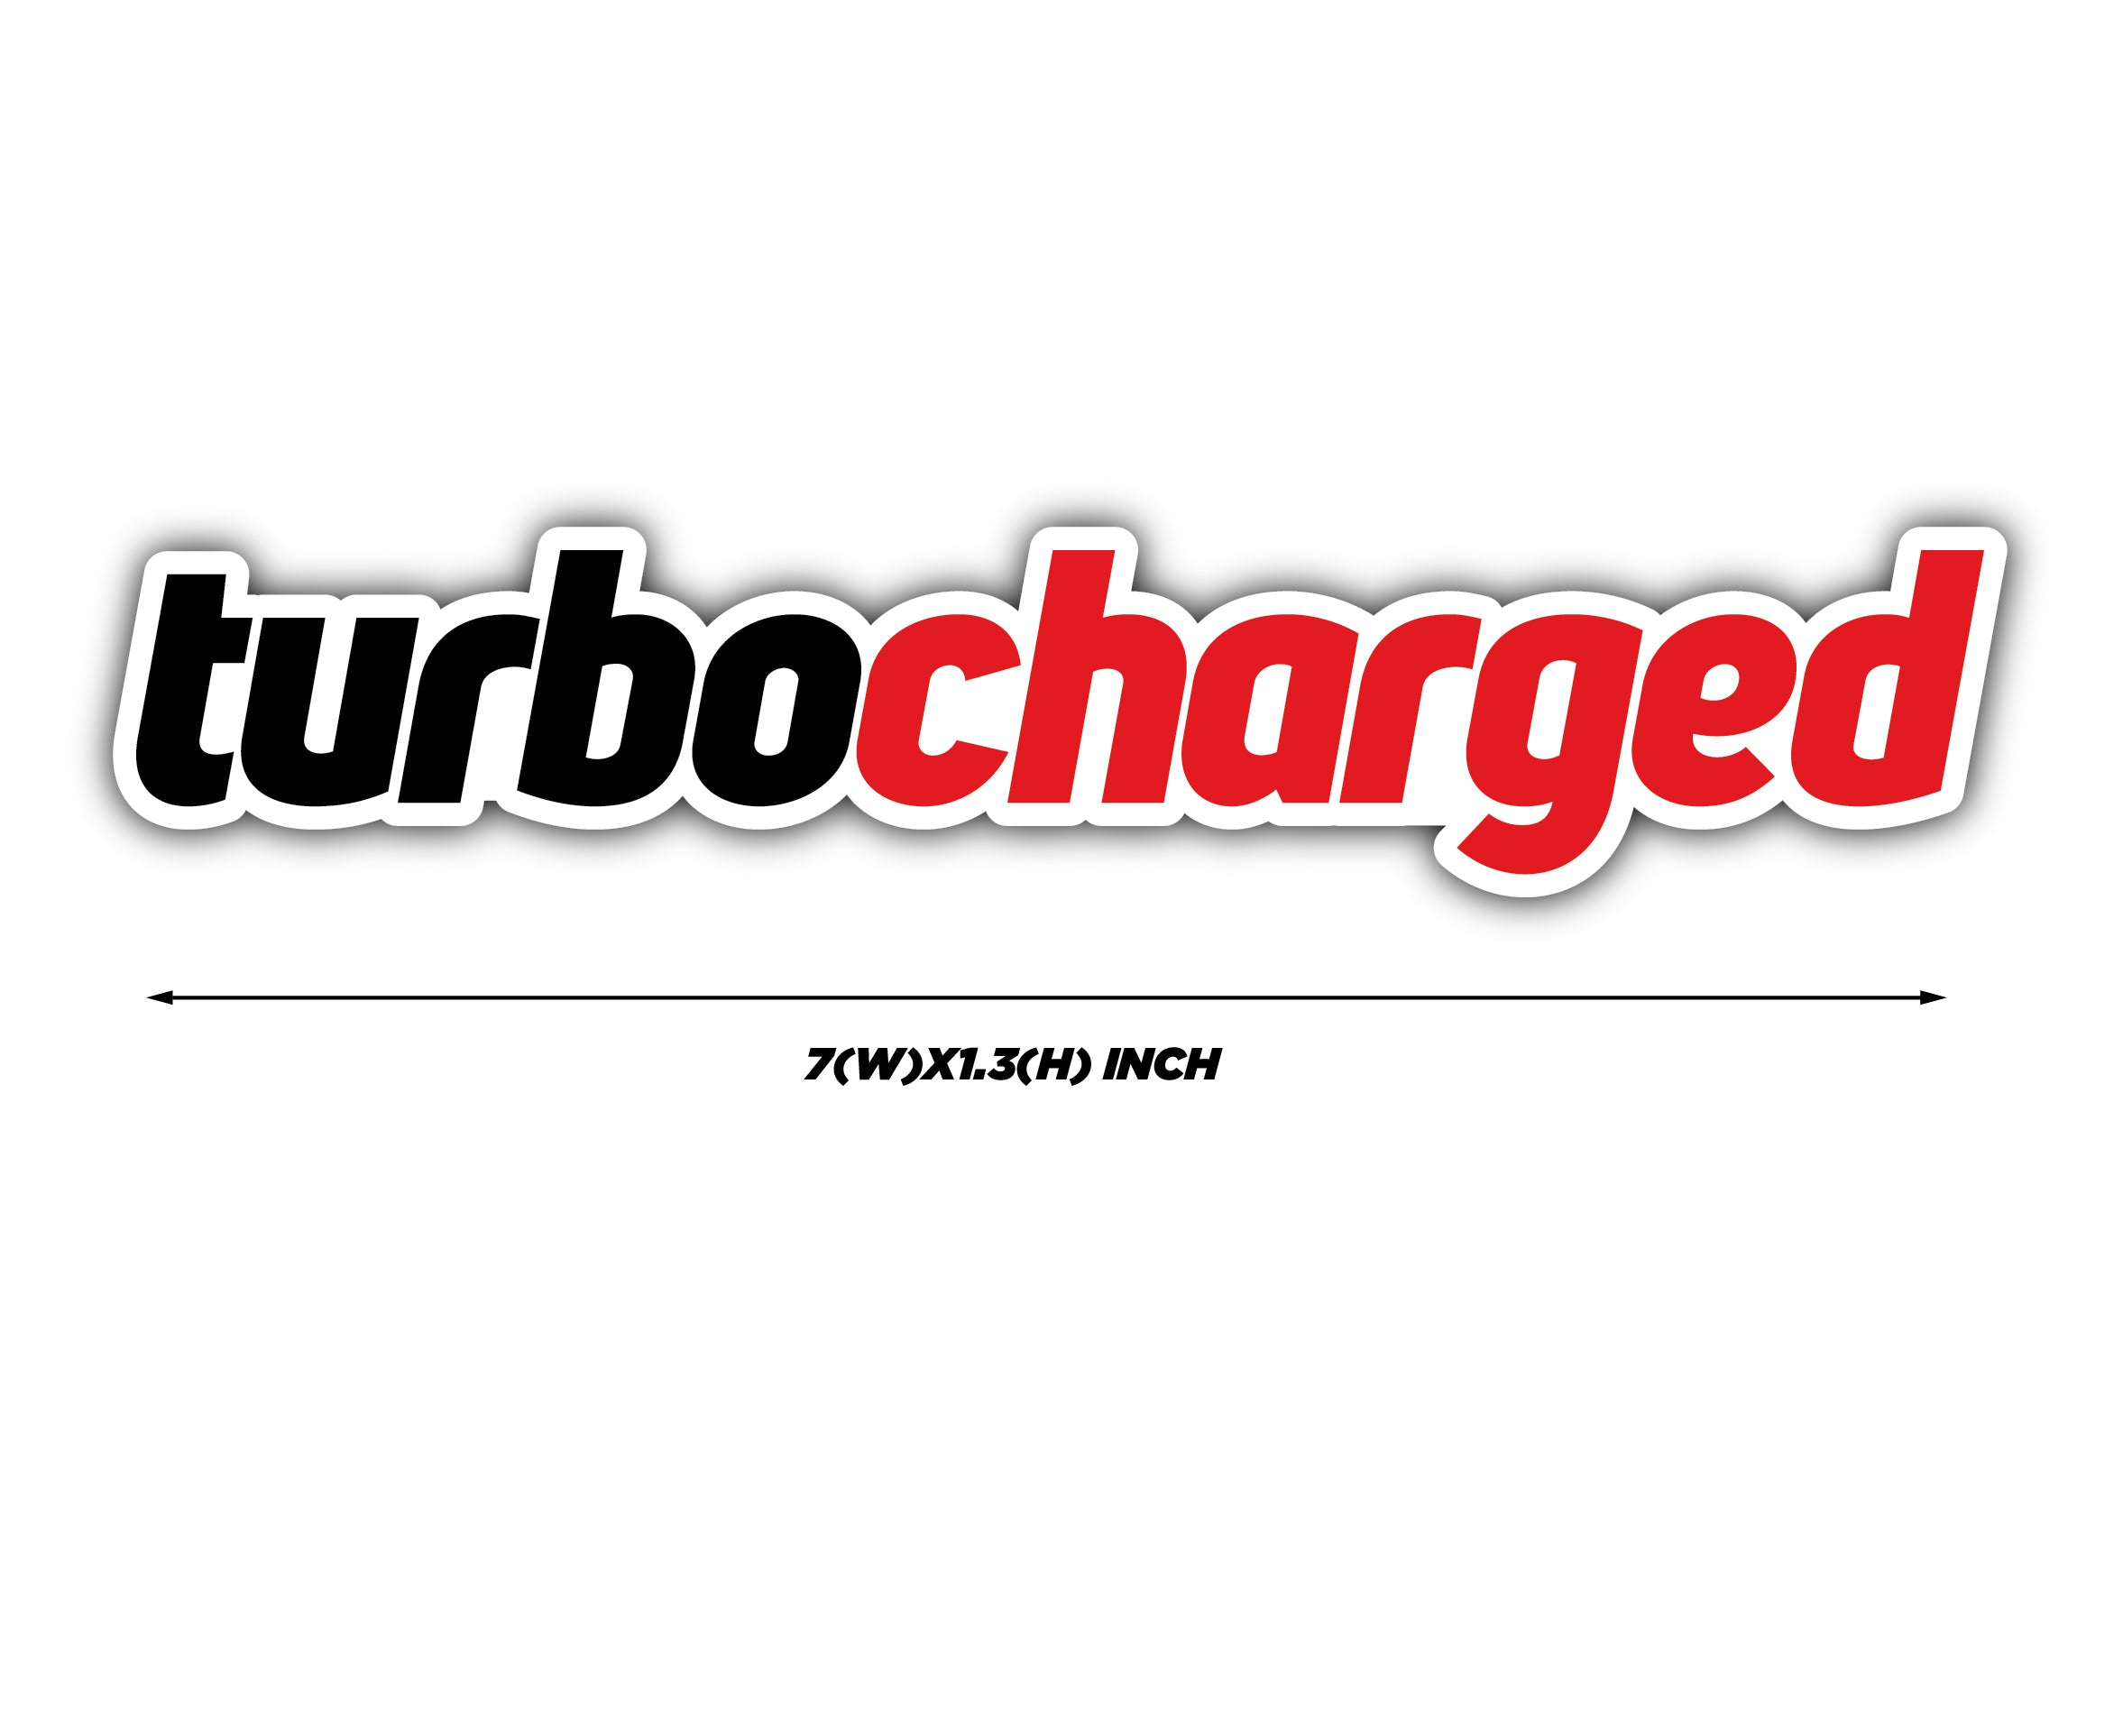 Turbocharged Car Sticker